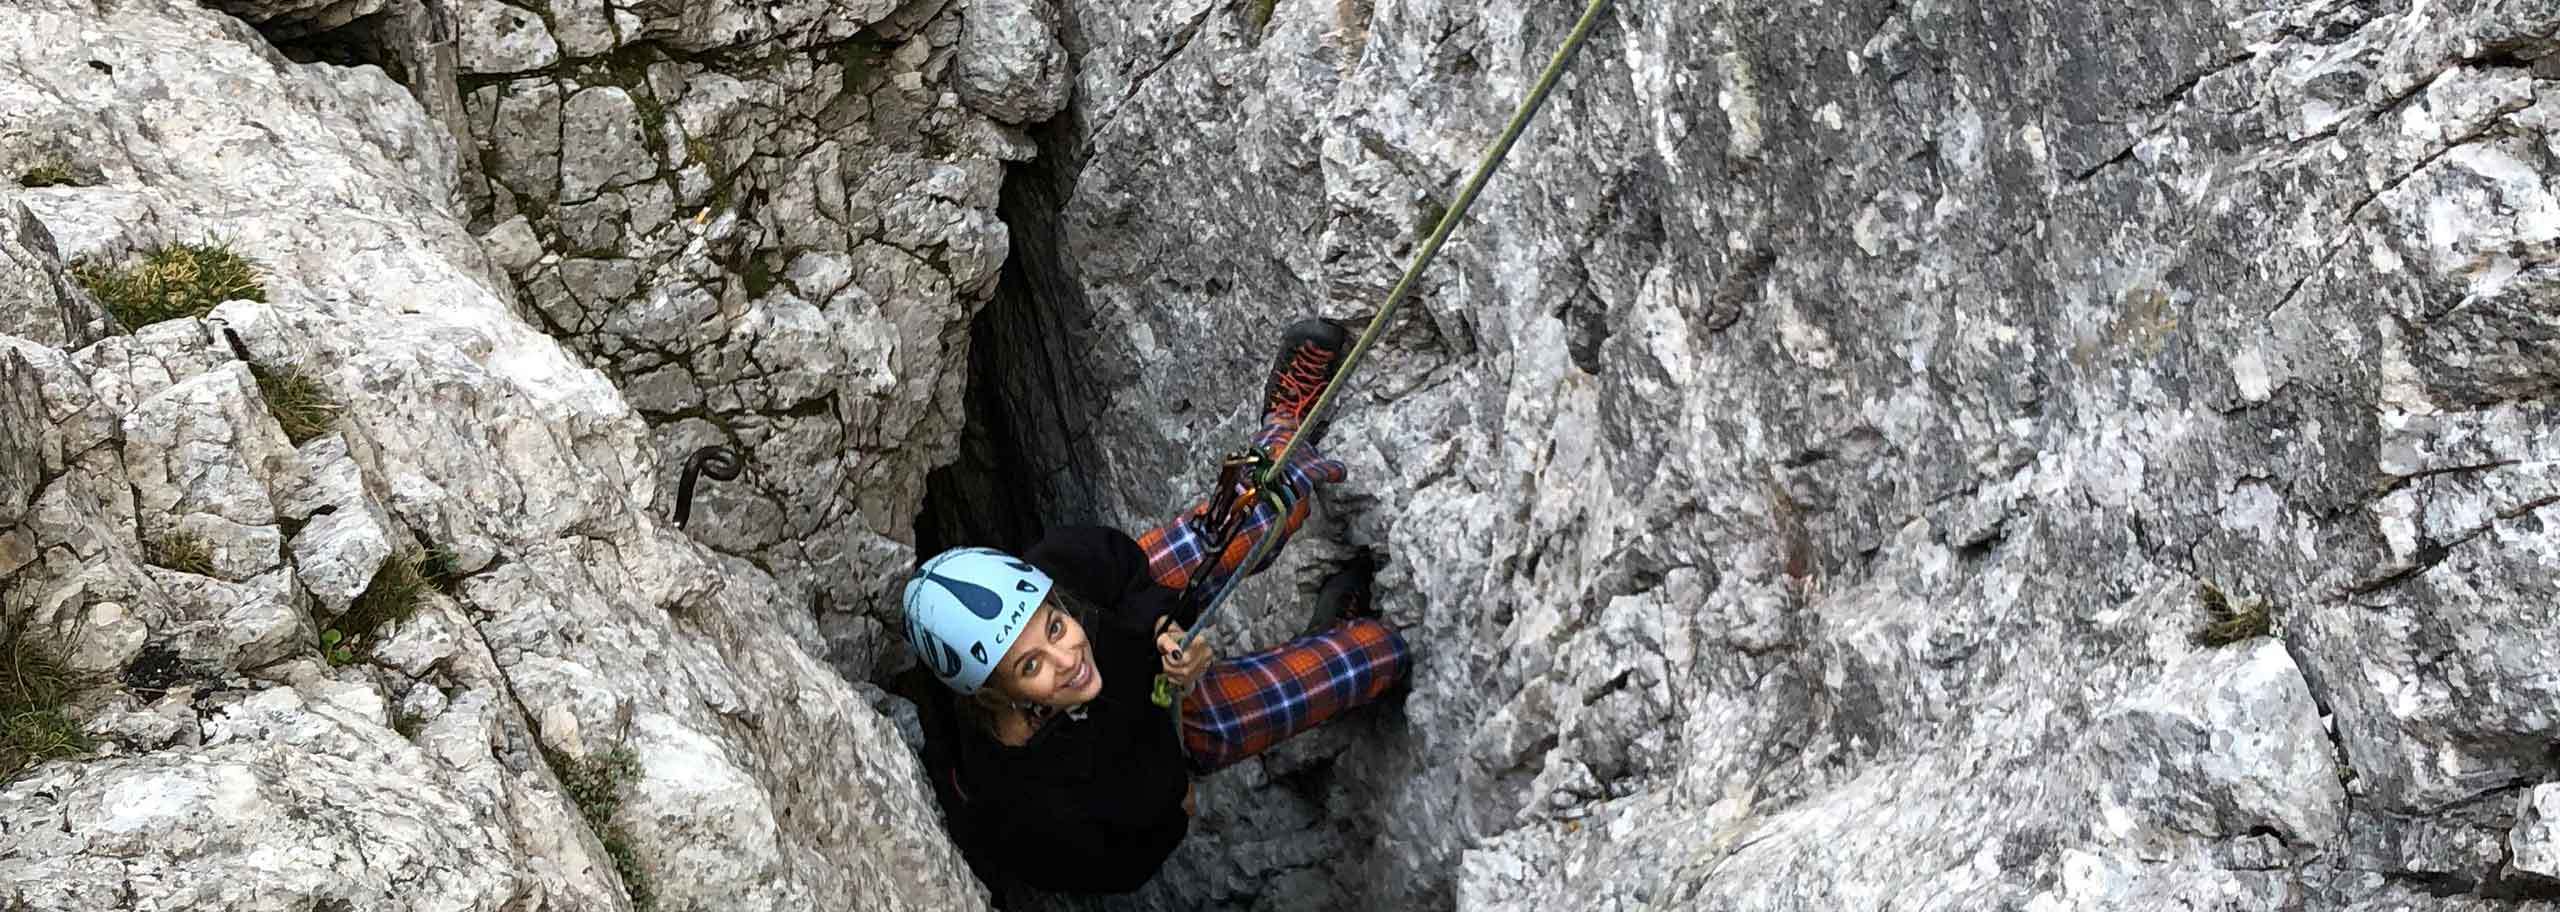 Climbing with a Mountain Guide in Agordo